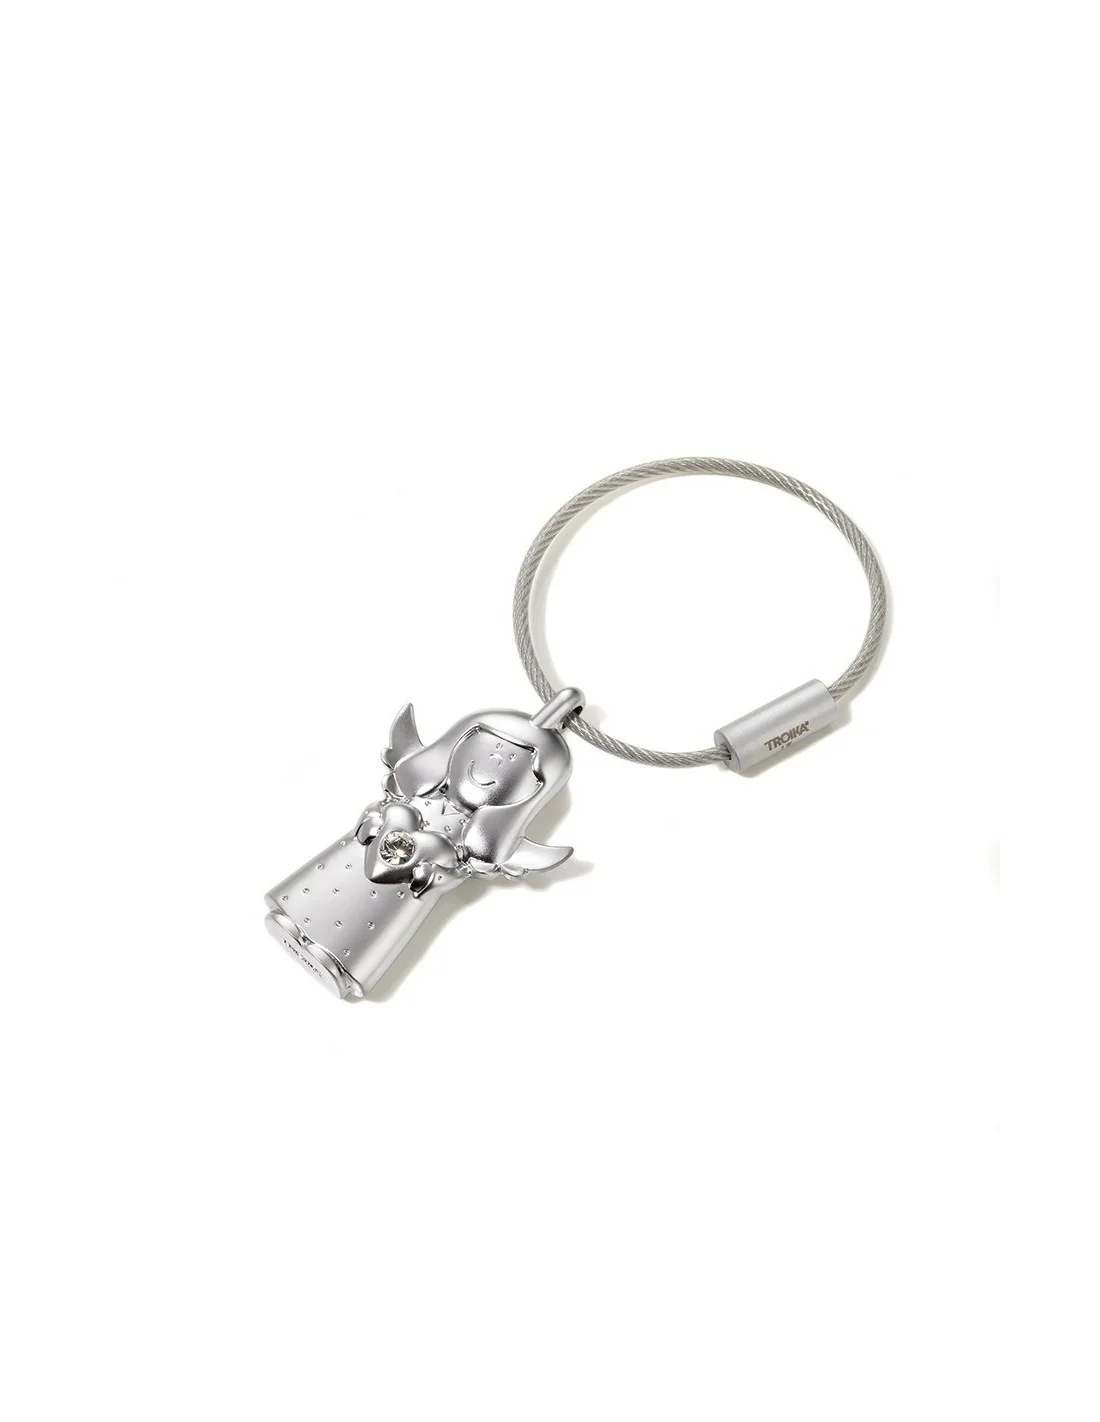 Ibera gifts - Personalisierter Metall-/Tuch-Schlüsselanhänger